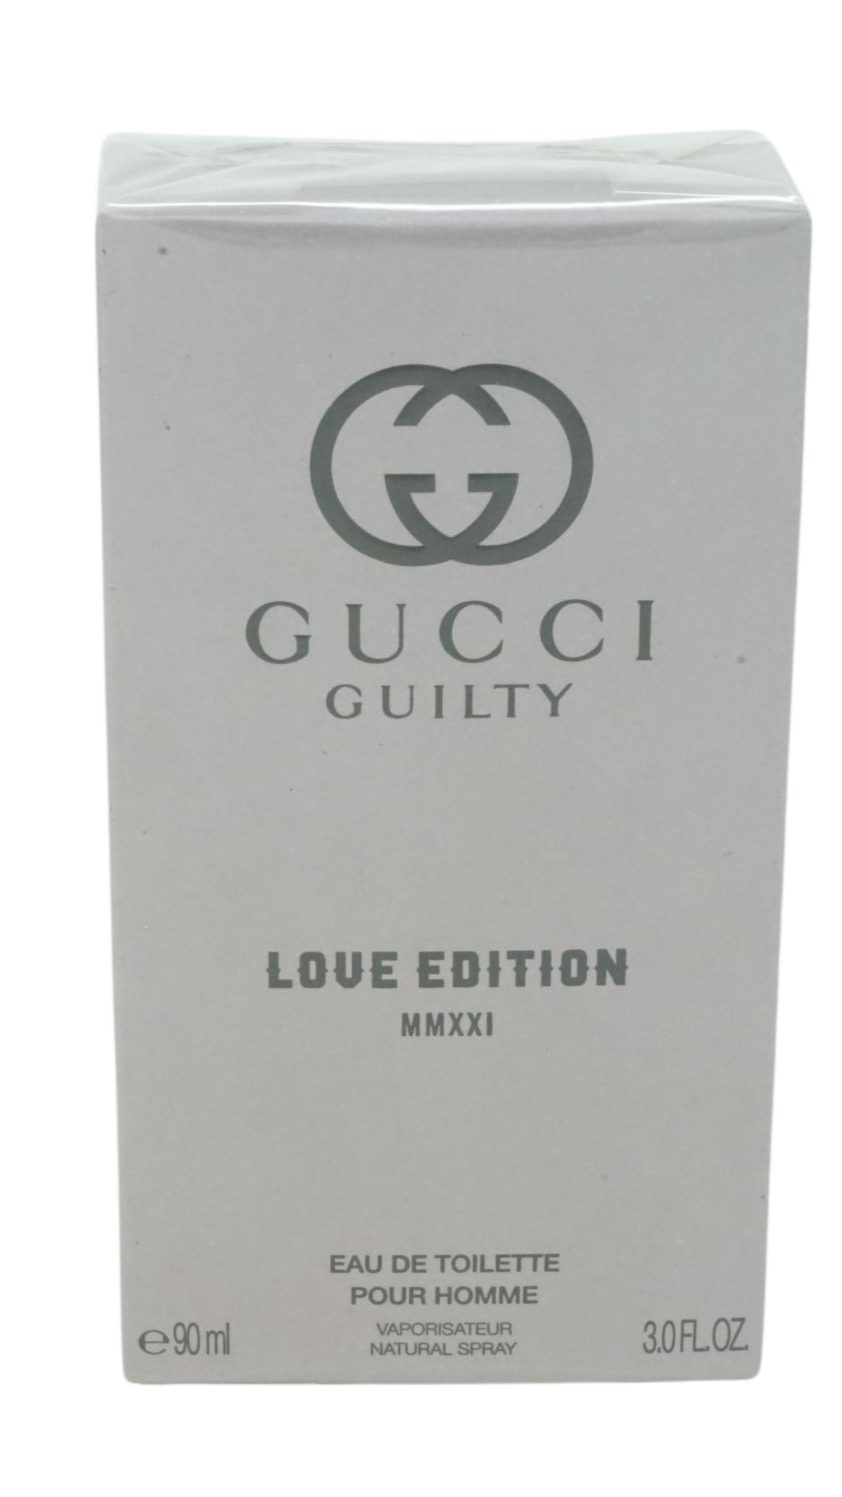 Toilette MMXXI Toilette GUCCI 90ml Gucci de Edition Love Eau Eau Guilty de